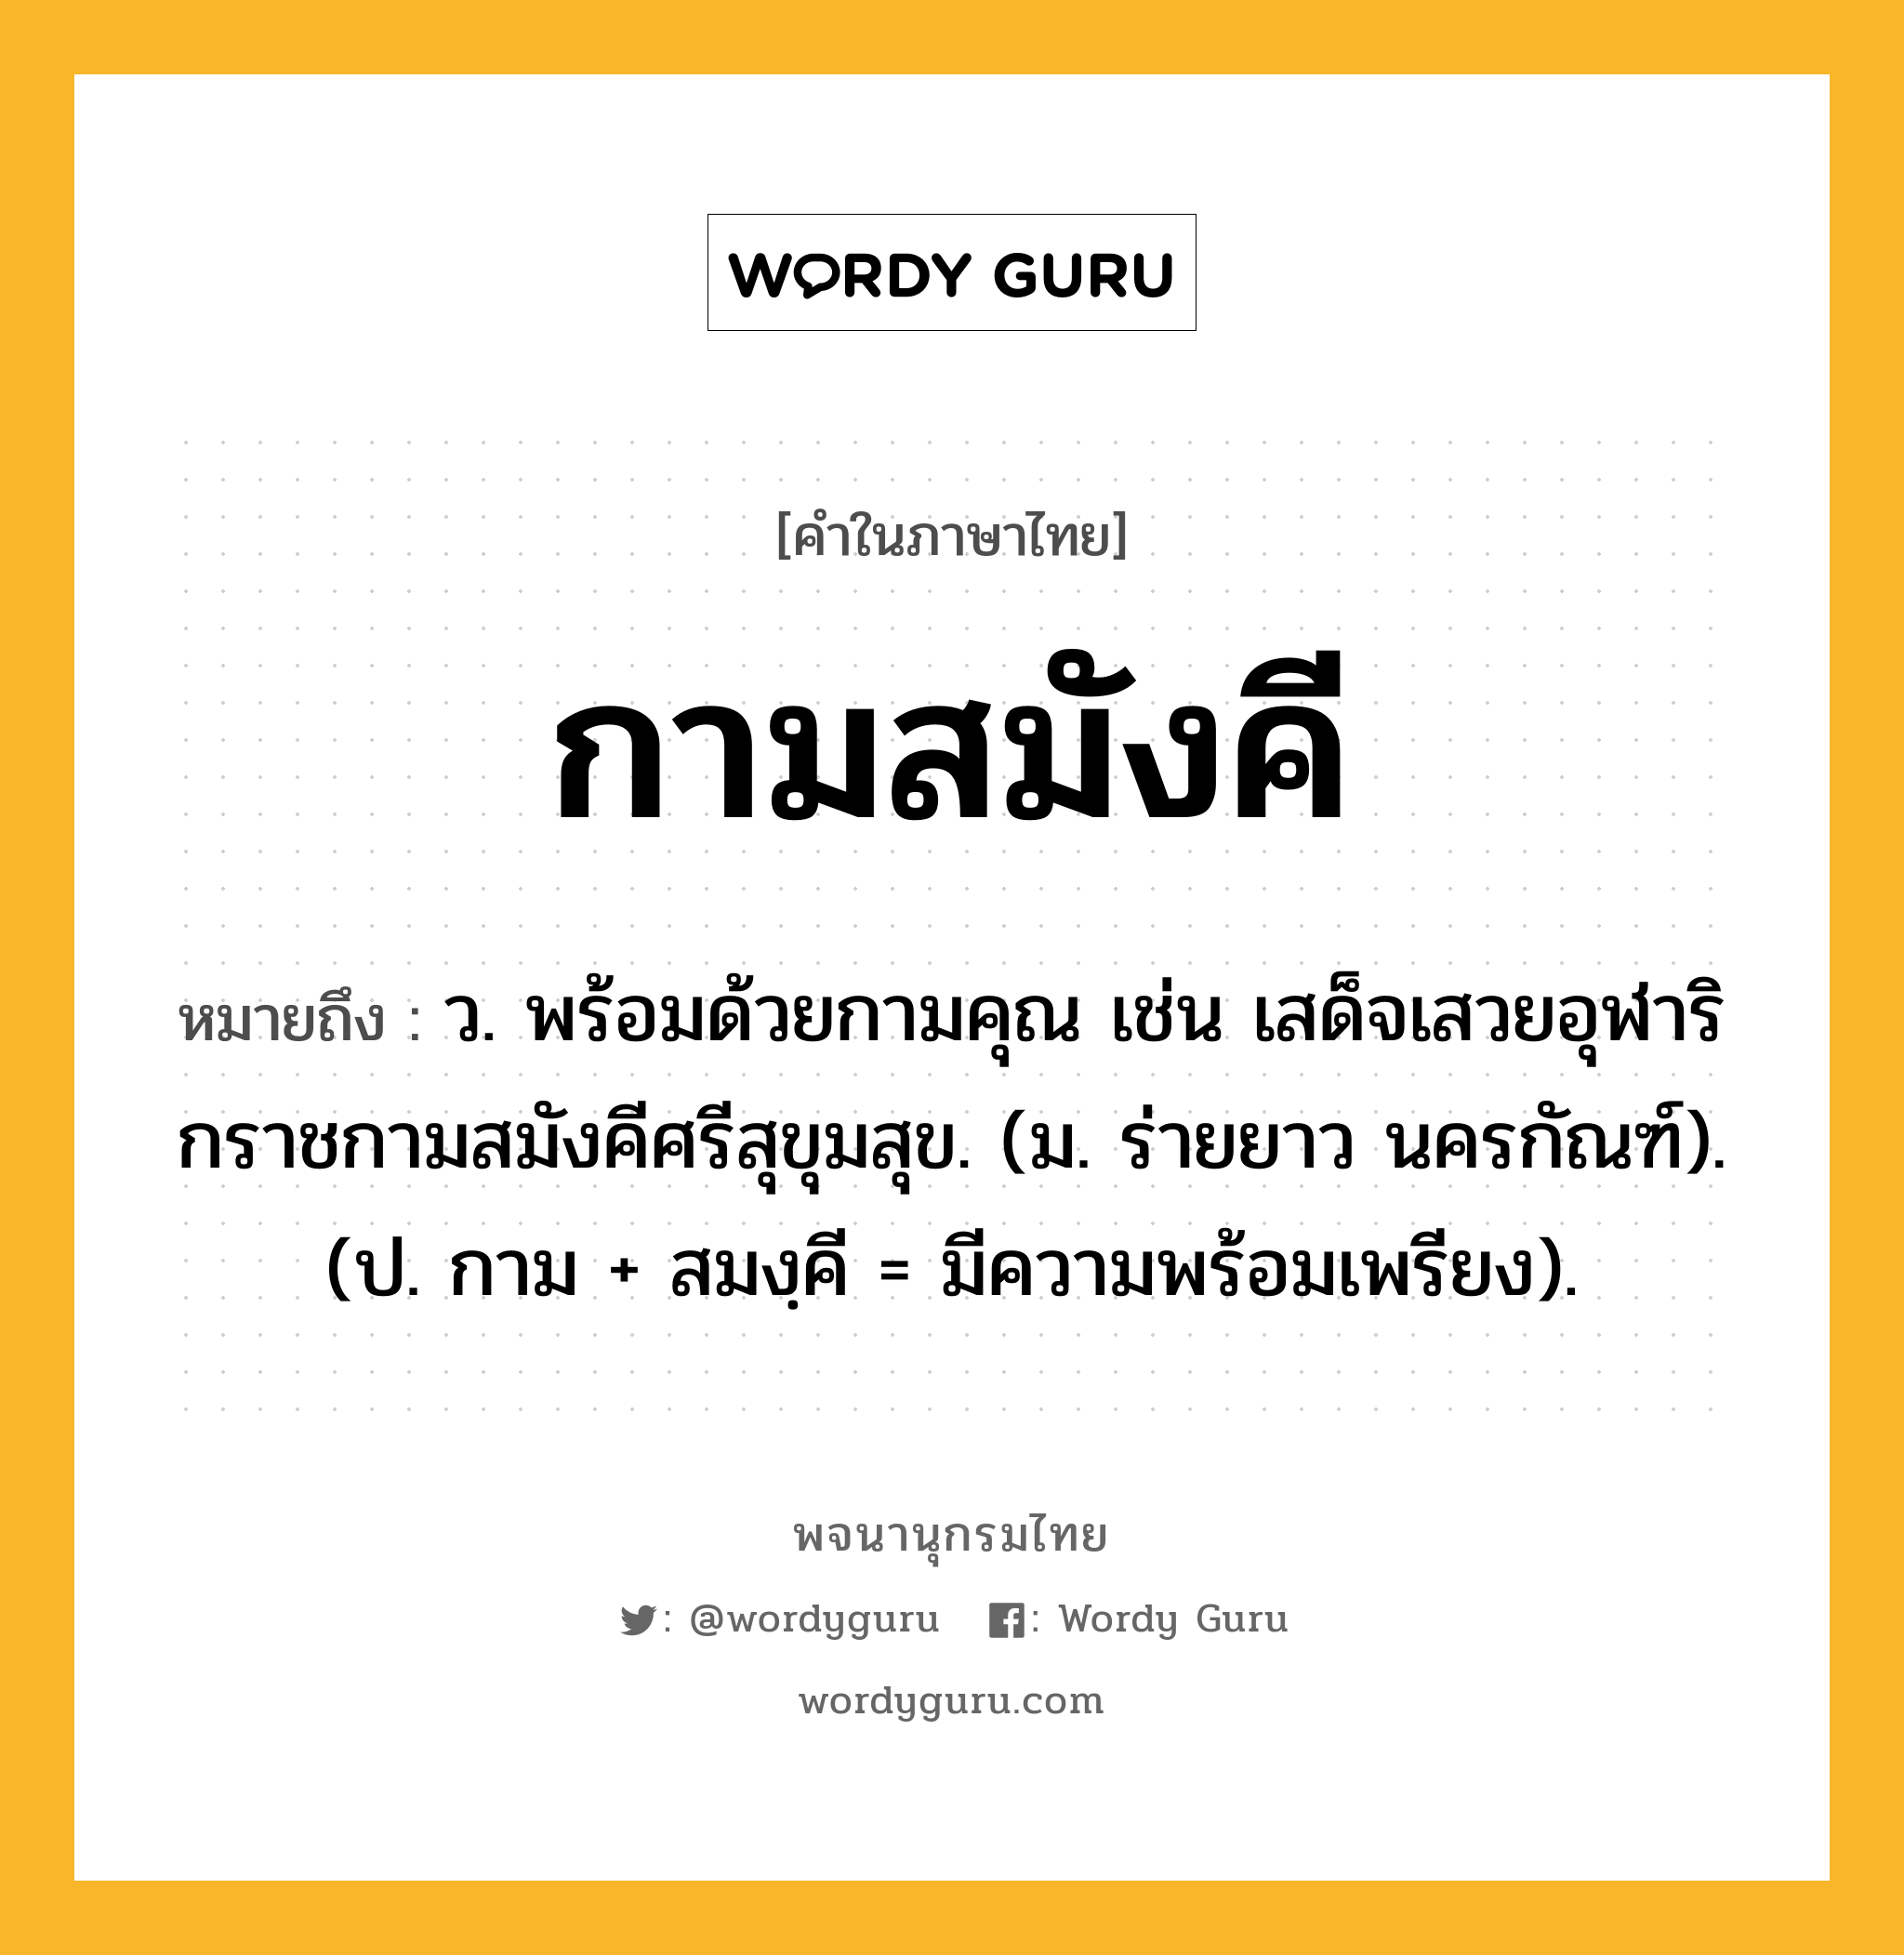 กามสมังคี หมายถึงอะไร?, คำในภาษาไทย กามสมังคี หมายถึง ว. พร้อมด้วยกามคุณ เช่น เสด็จเสวยอุฬาริกราชกามสมังคีศรีสุขุมสุข. (ม. ร่ายยาว นครกัณฑ์). (ป. กาม + สมงฺคี = มีความพร้อมเพรียง).